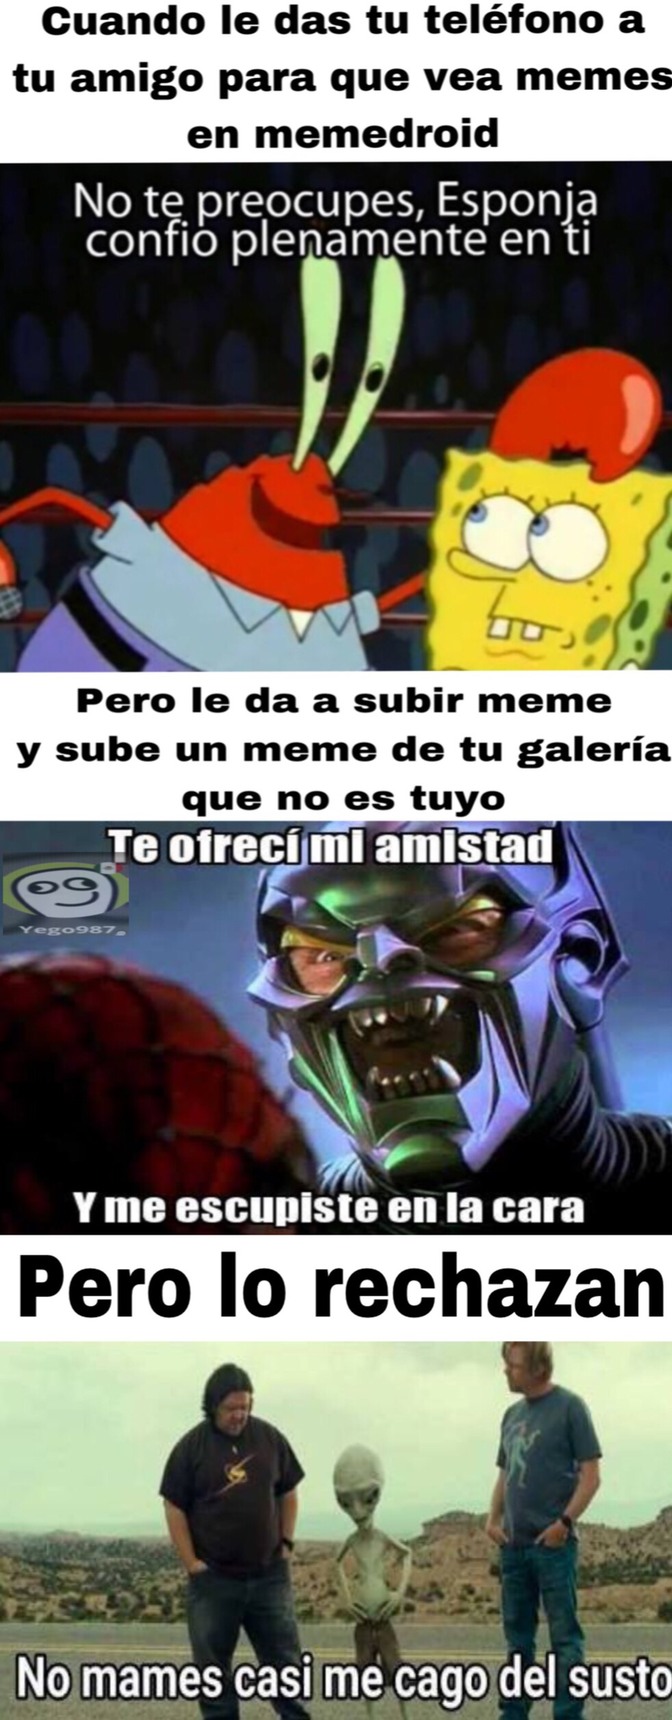 Todo Eso Paso En La Maana Meme By Yego987 Memedroid